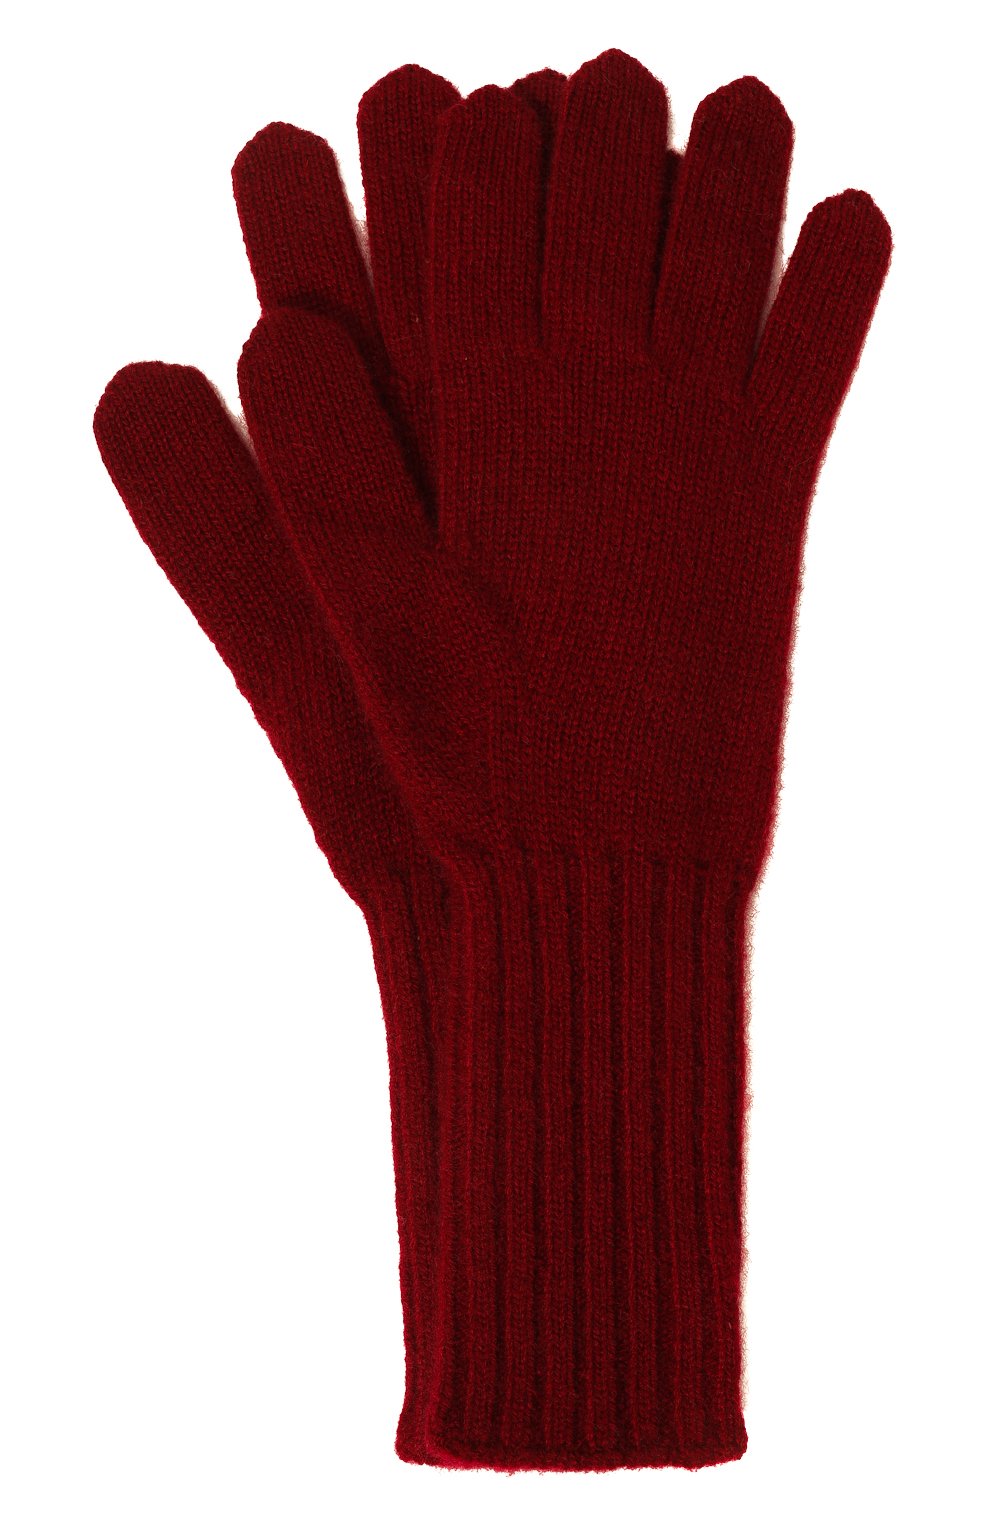 Женские кашемировые перчатки TEGIN бордового цвета, арт. 5236 | Фото 1 (Материал: Текстиль, Кашемир, Шерсть)